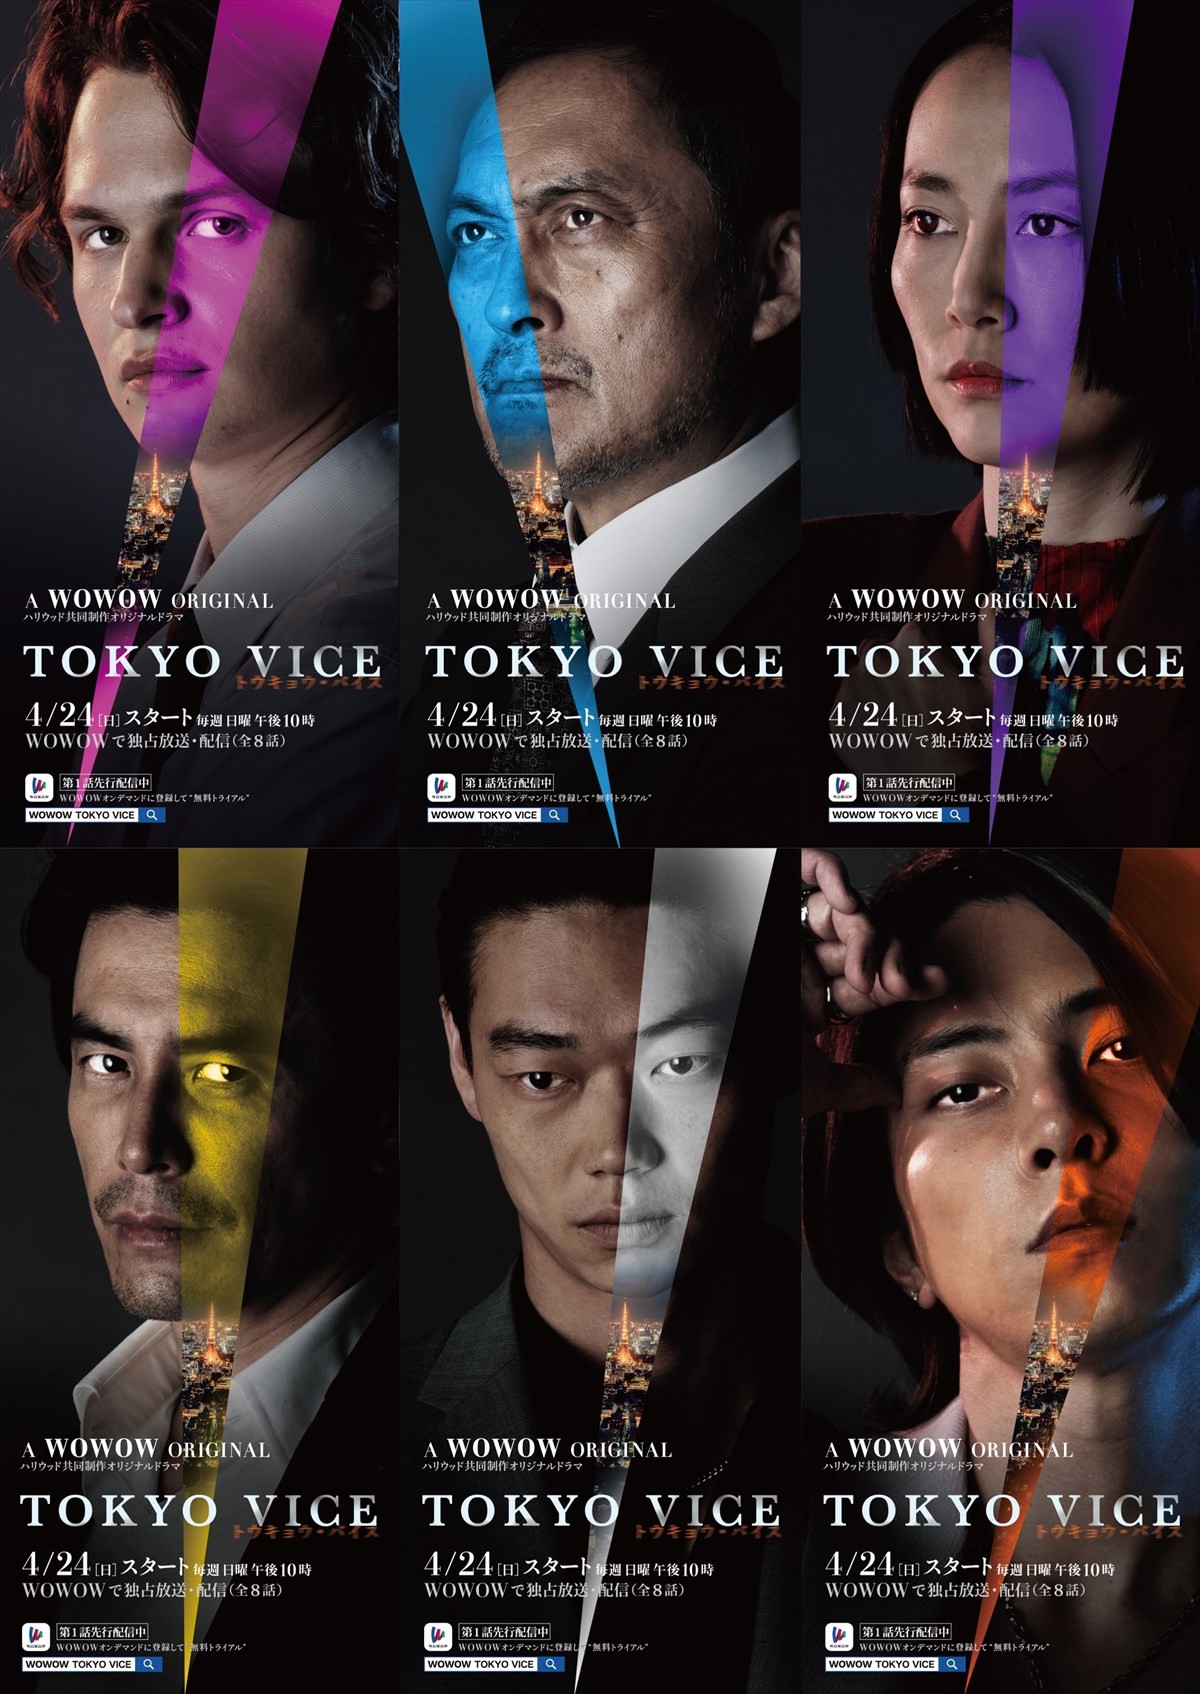 アンセル・エルゴート、伊藤英明、山下智久『TOKYO VICE』、キャラクターポスター14種解禁